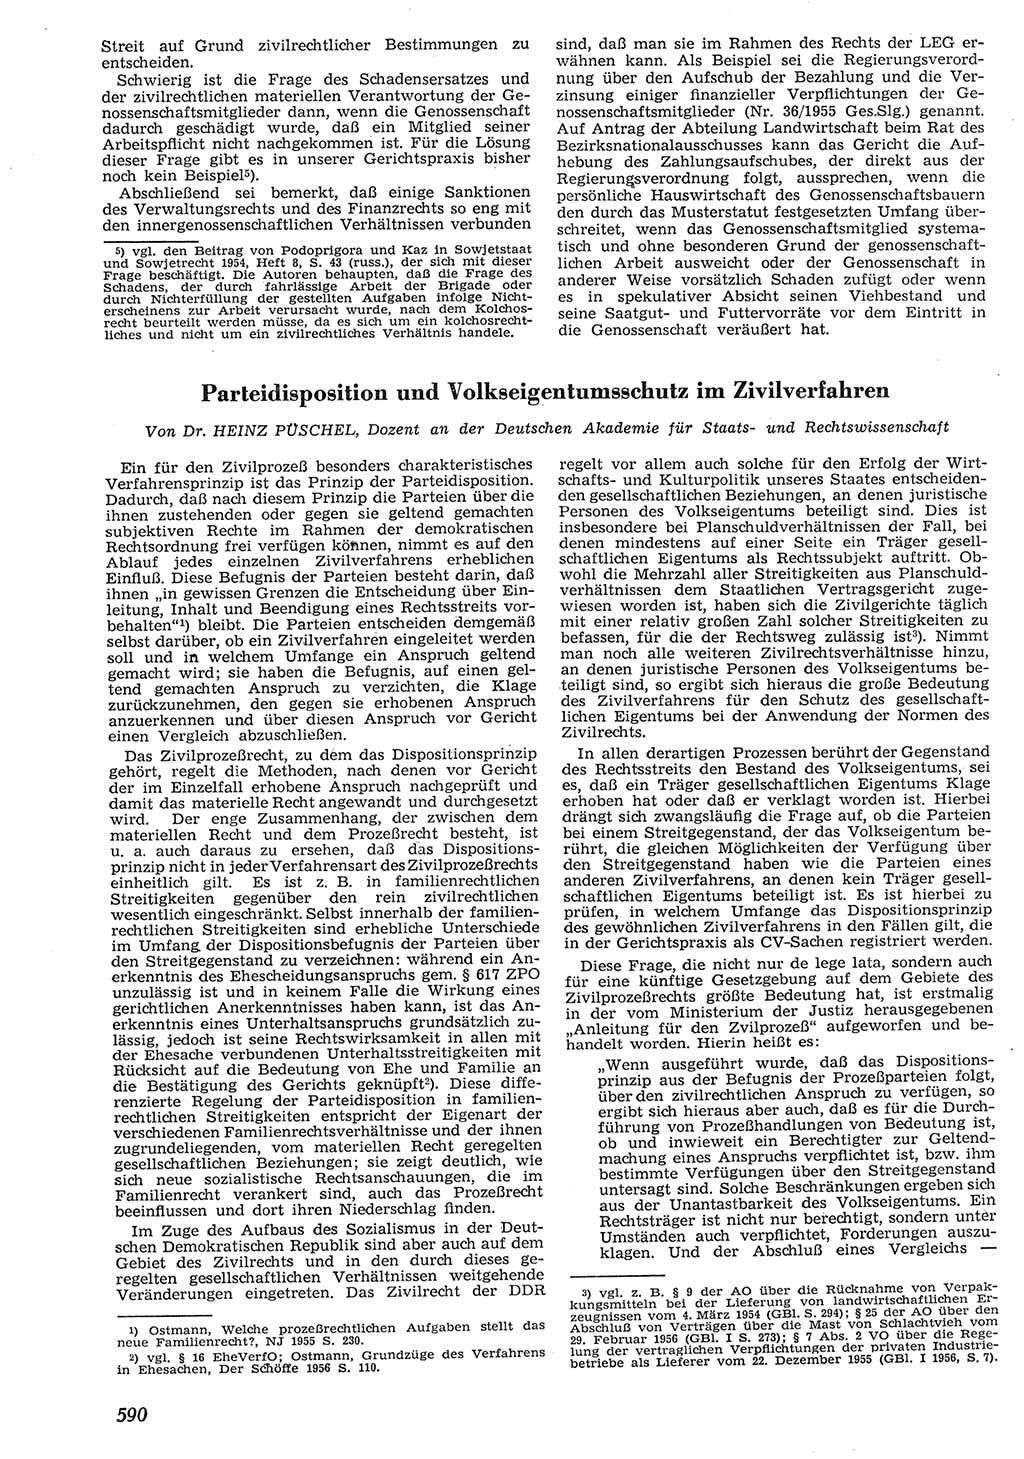 Neue Justiz (NJ), Zeitschrift für Recht und Rechtswissenschaft [Deutsche Demokratische Republik (DDR)], 10. Jahrgang 1956, Seite 590 (NJ DDR 1956, S. 590)